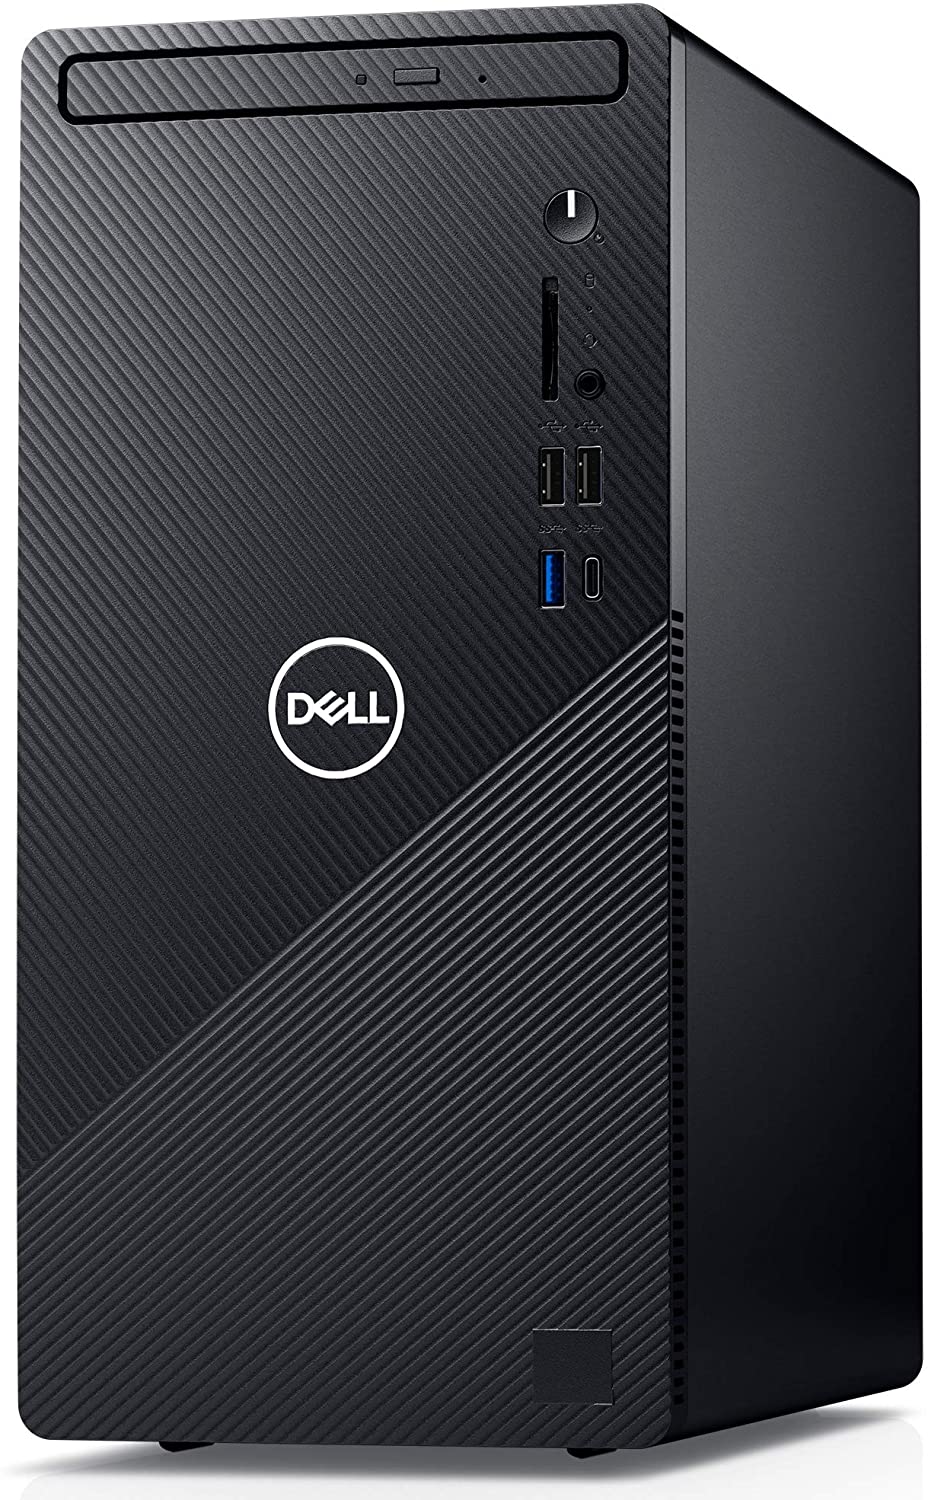 Sistem Brand Dell Inspiron 3881 Intel Core i5-10400F GTX 1650 SUPER-4GB RAM 8GB HDD 1TB + SSD 256GB Windows 10 Pro